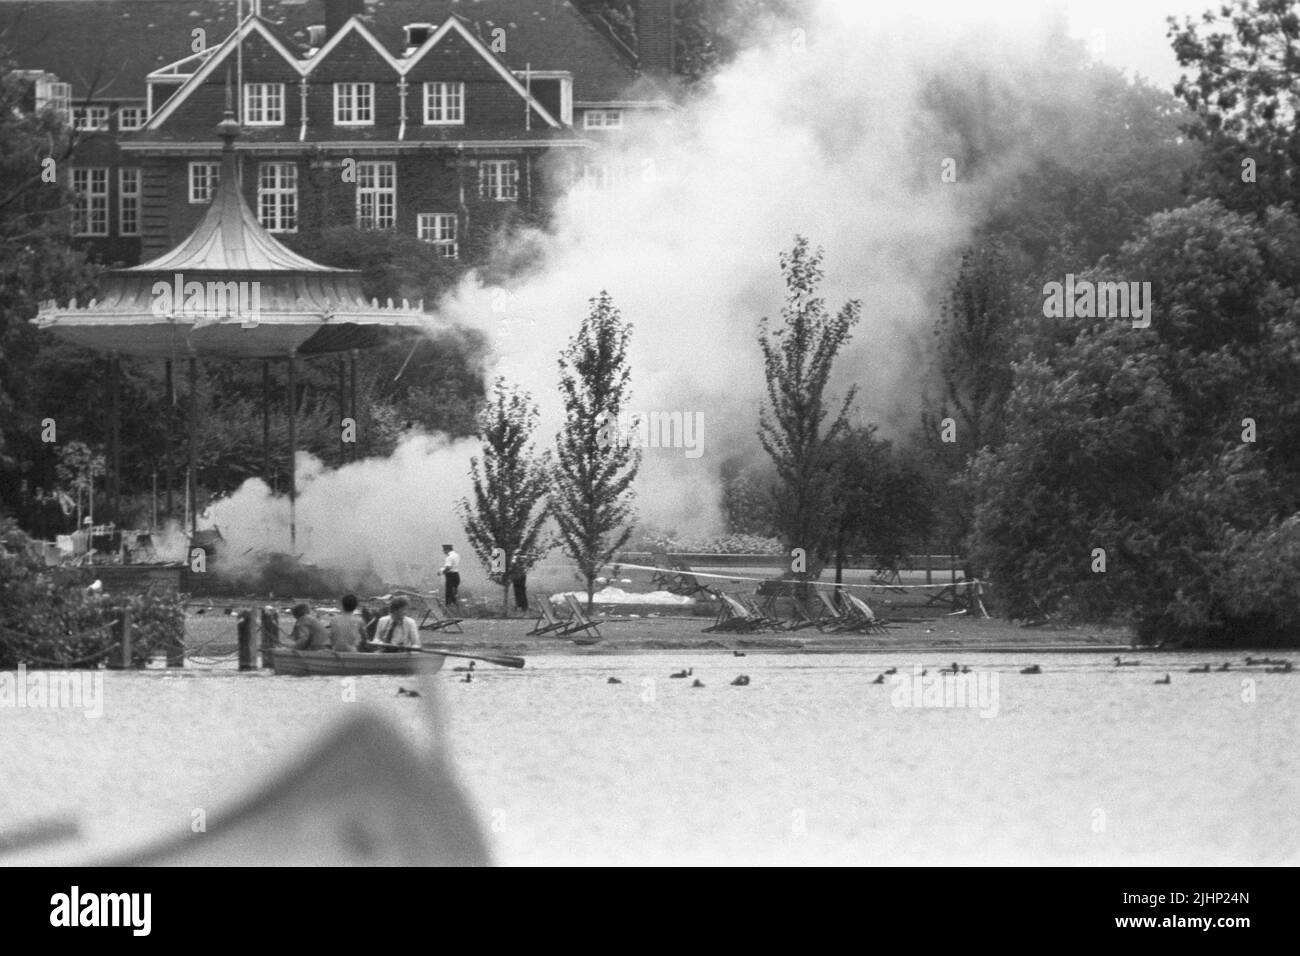 Photo du dossier datée du 20/7/1982 de fumée s'élève de l'épave du kiosque à musique Regent's Park après l'attentat. Les familles de soldats tués dans les attentats à la bombe de Hyde Park et Regent's Park IRA ont dit que leurs souffrances restent indiminuées 40 ans plus tard. Au total, 11 militaires sont morts dans les deux attaques qui se sont produites à quelques heures l'une de l'autre à Londres sur 20 juillet 1982. Date de publication : mercredi 20 juillet 2022. Banque D'Images